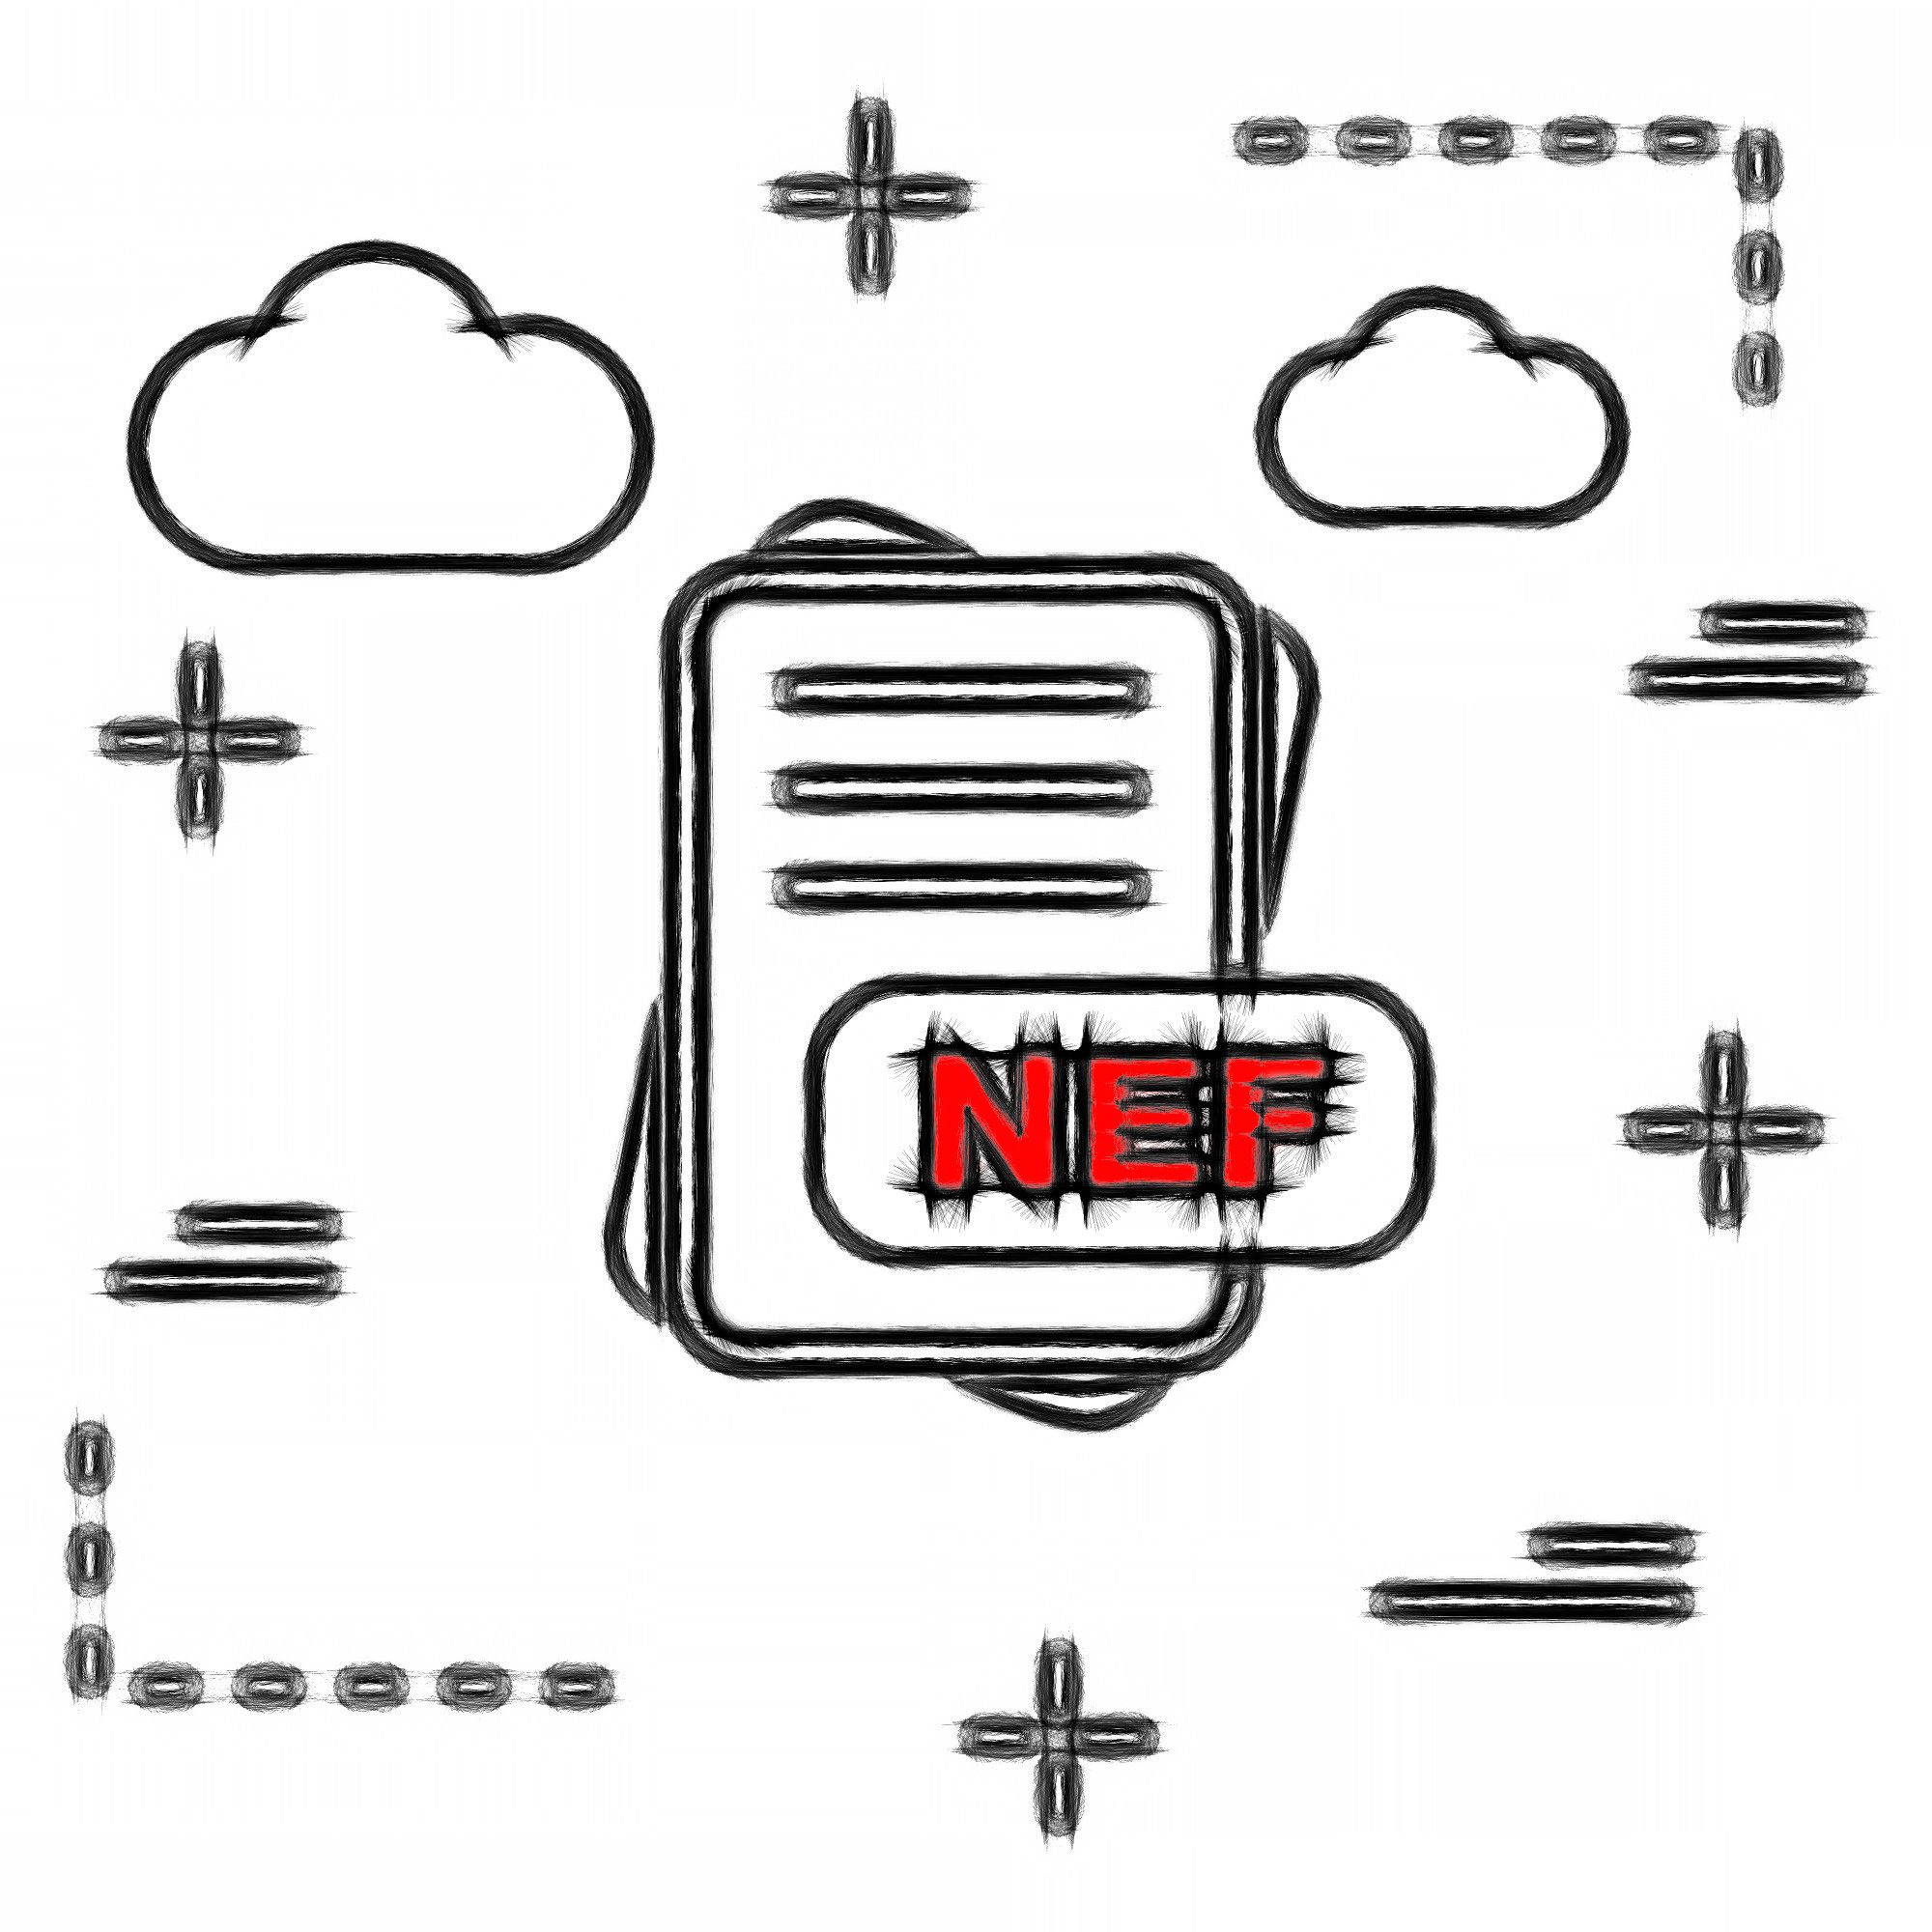 NEF-bestandsformaat..